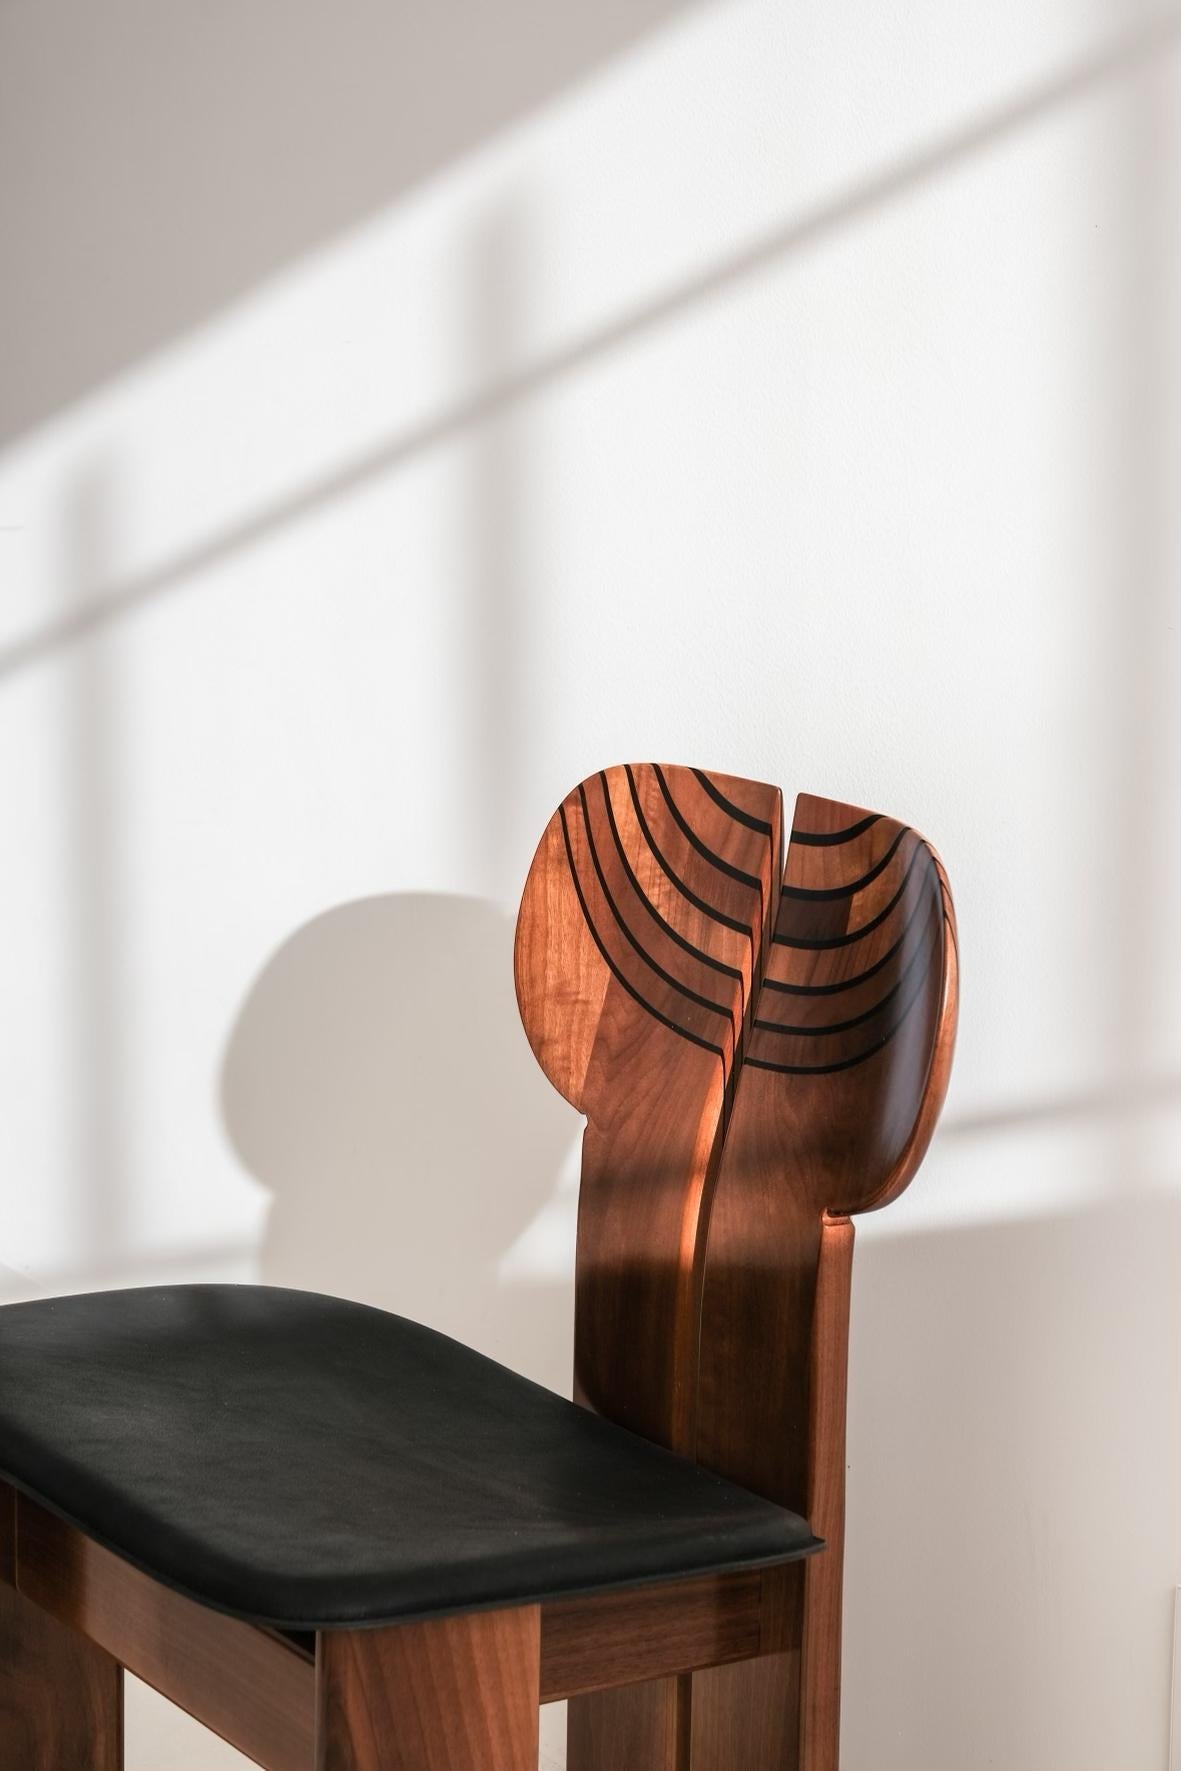 Ensemble de 6 chaises Africa par Afra et Tobia Scarpa pour Maxalto.
Embrassez l'allure intemporelle de l'histoire du design avec cette collection exceptionnelle de chaises africaines restaurées. Méticuleusement ramenée à sa splendeur d'origine,